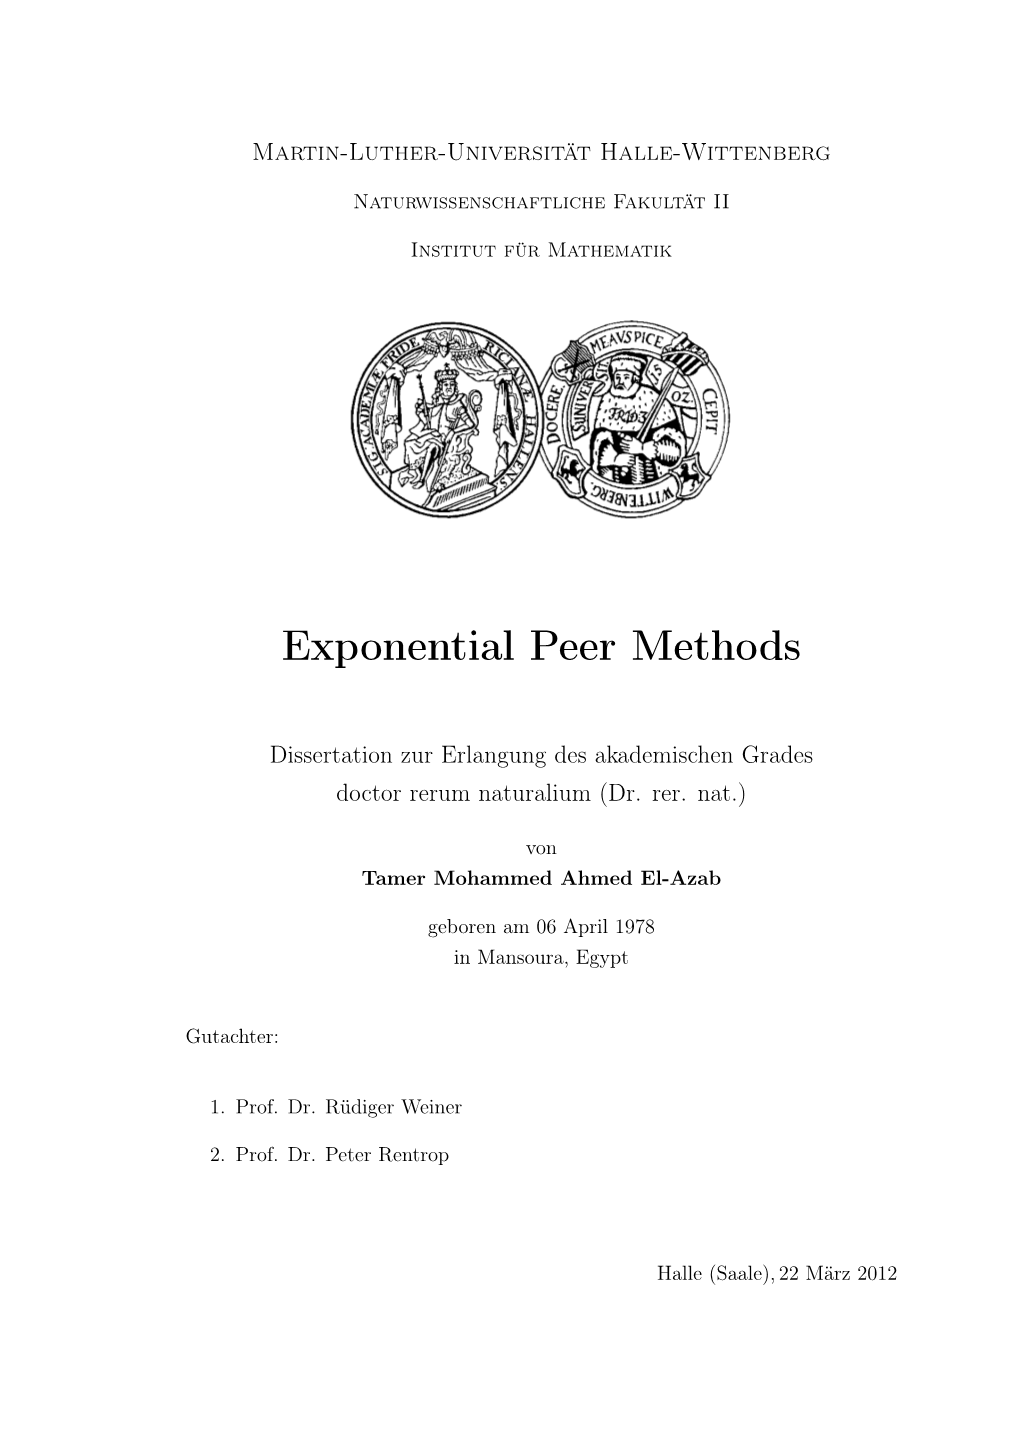 Exponential Peer Methods [35Pt]